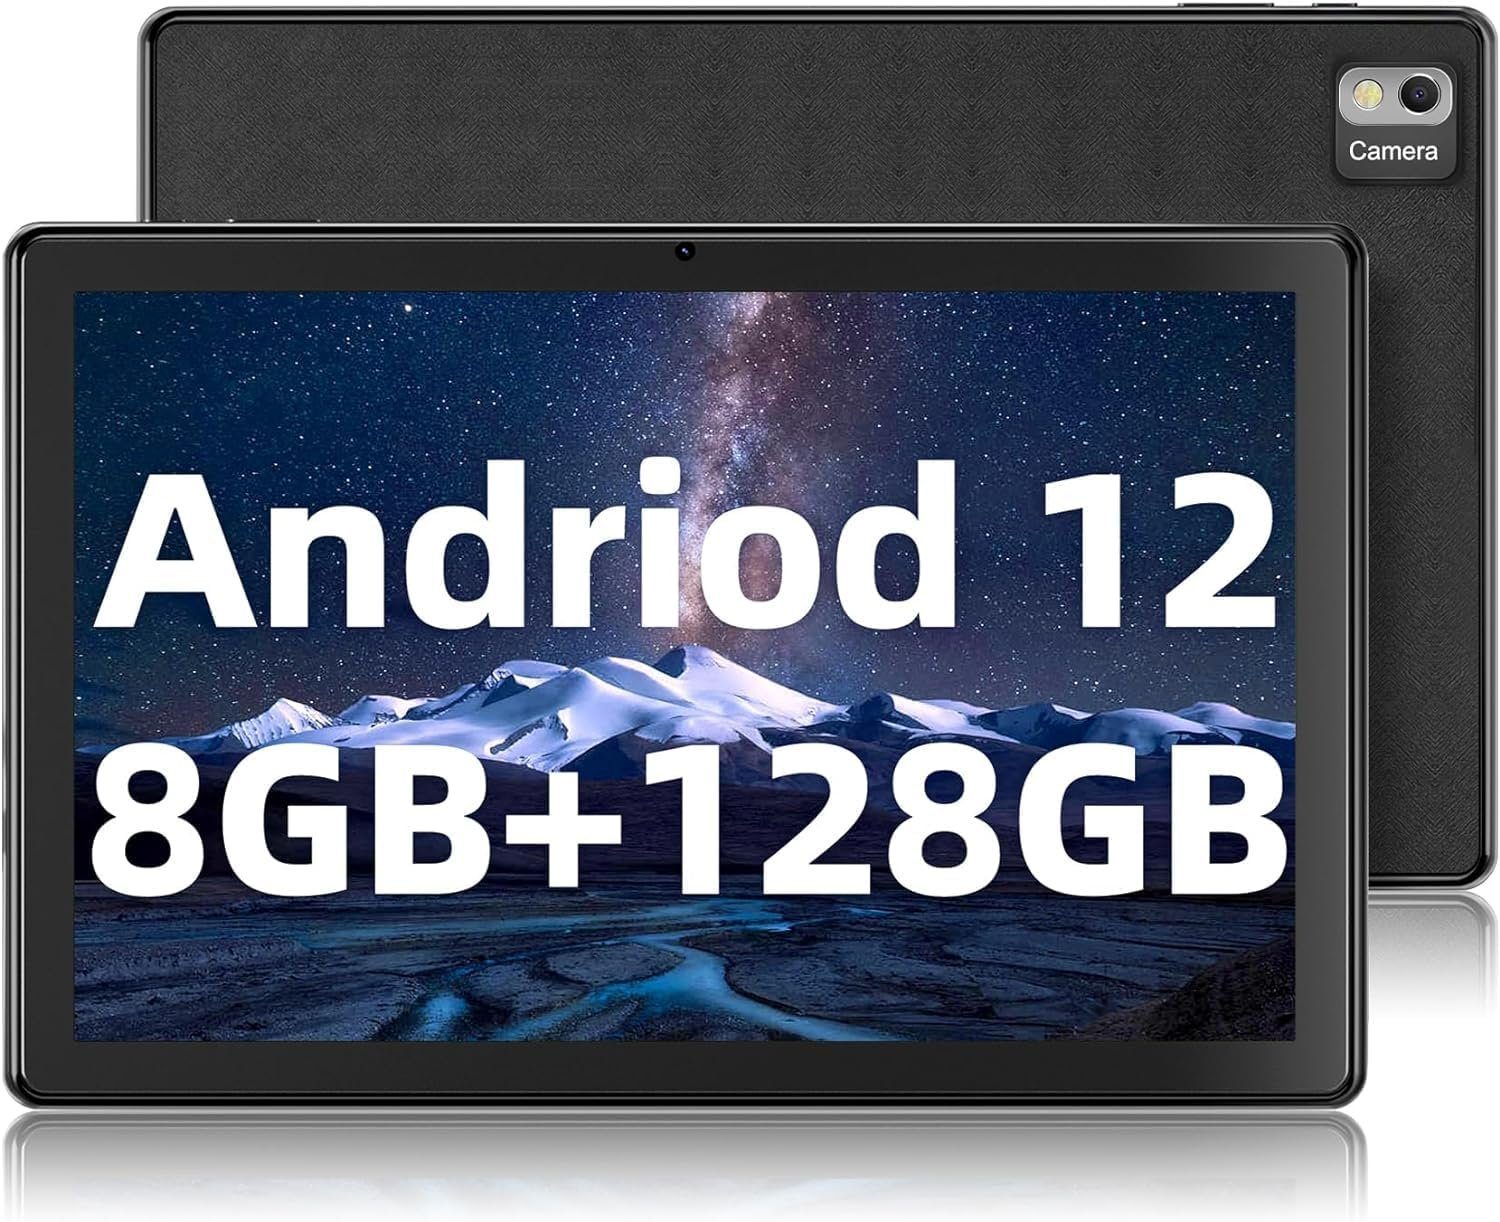 SGIN Entspiegelte matte Beschichtung Tablet (10,1", 128 GB, Android 12, 2,4G+5G, Tablet Octa Core bis zu 1,6 GHz, 5 MP + 8 MP Telecamera, Akku 6000 mAh)